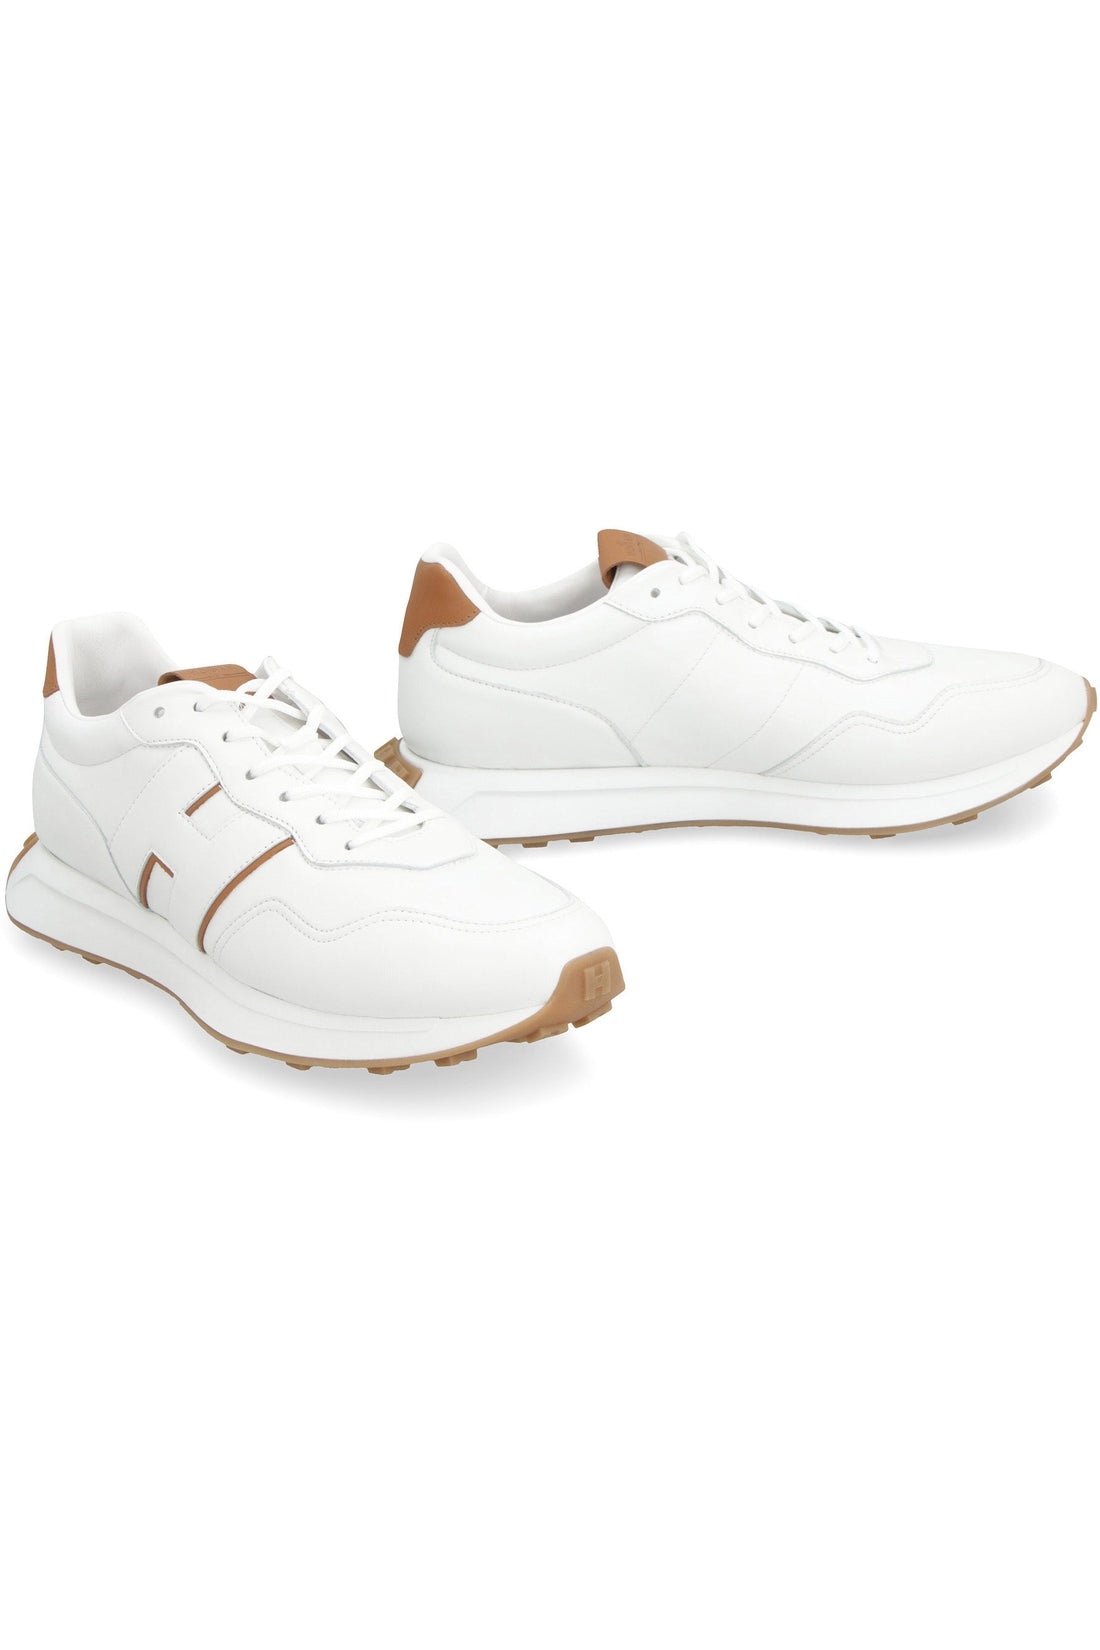 Hogan-OUTLET-SALE-Hogan H601 leather low-top sneakers-ARCHIVIST